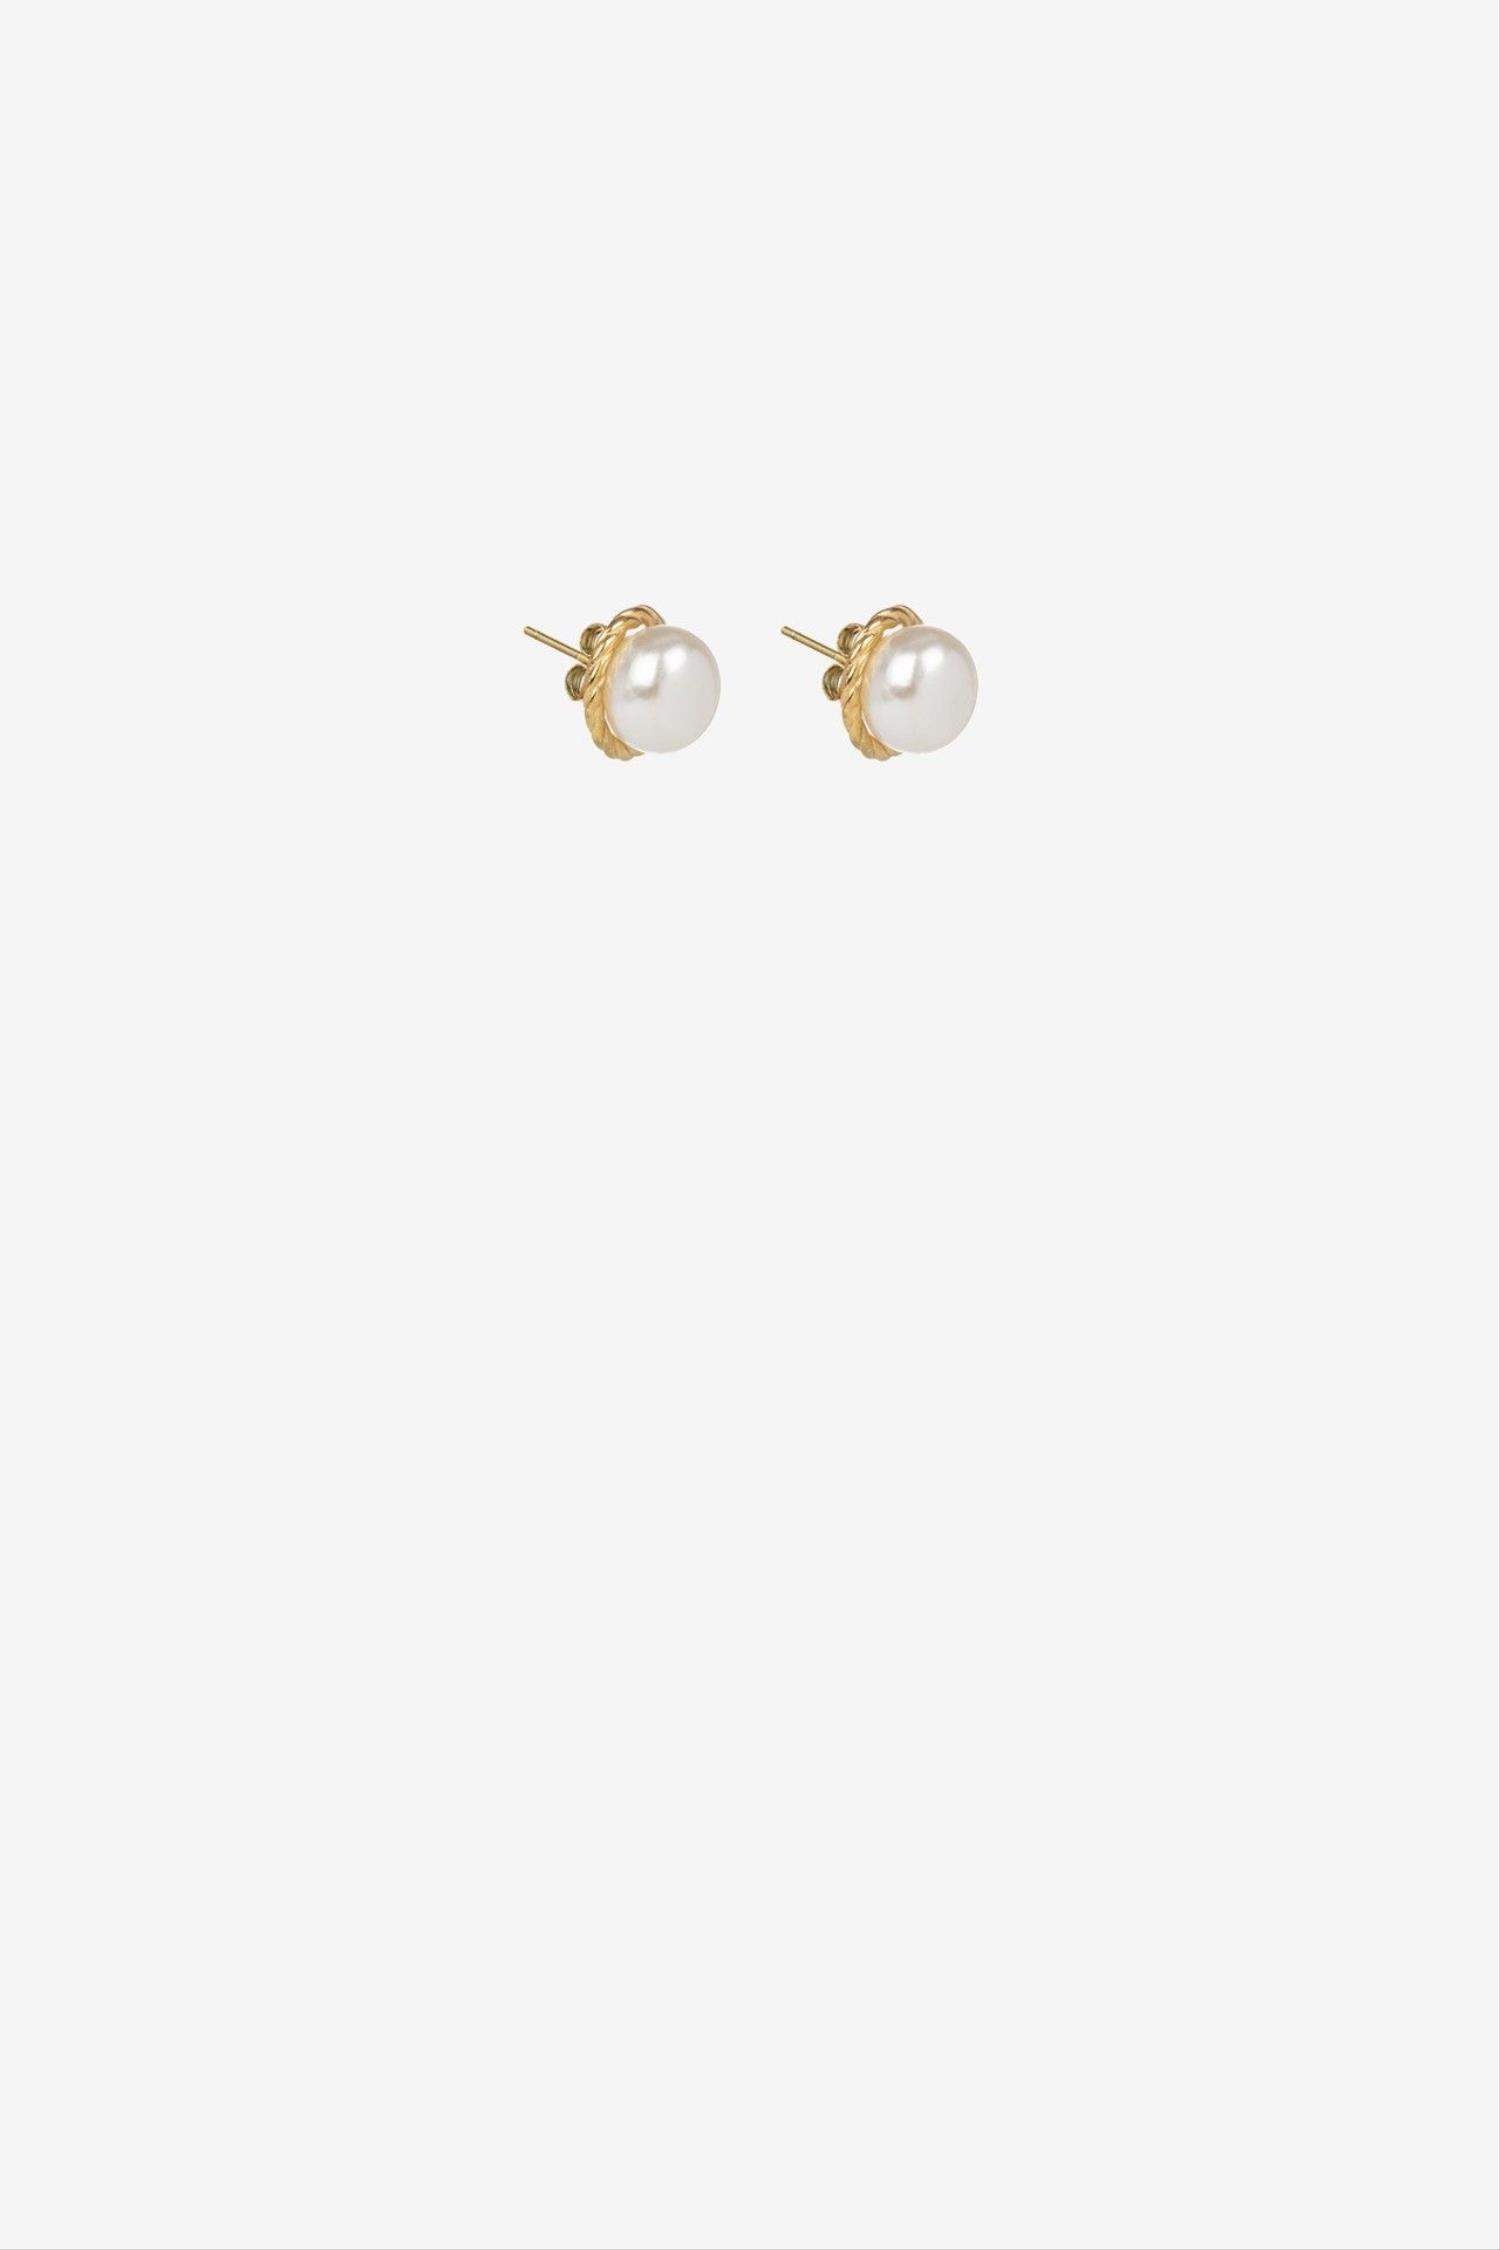 Pendientes de perla de la marca Vilanova con referencia 71004220_990.